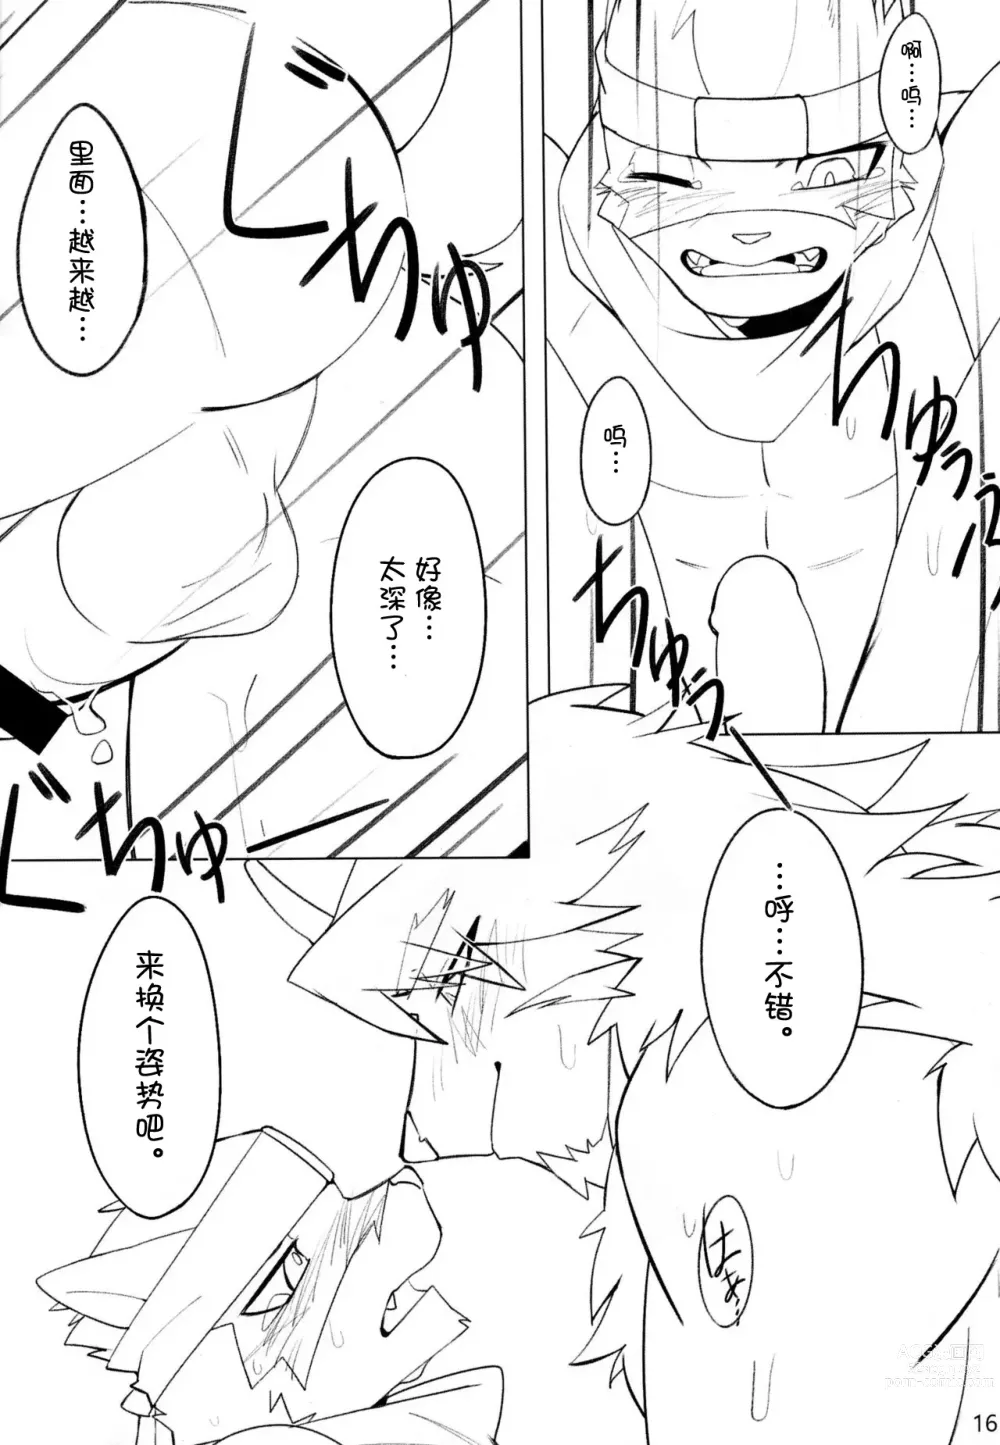 Page 16 of doujinshi [雨][刃鸣菌个人汉化][escape]